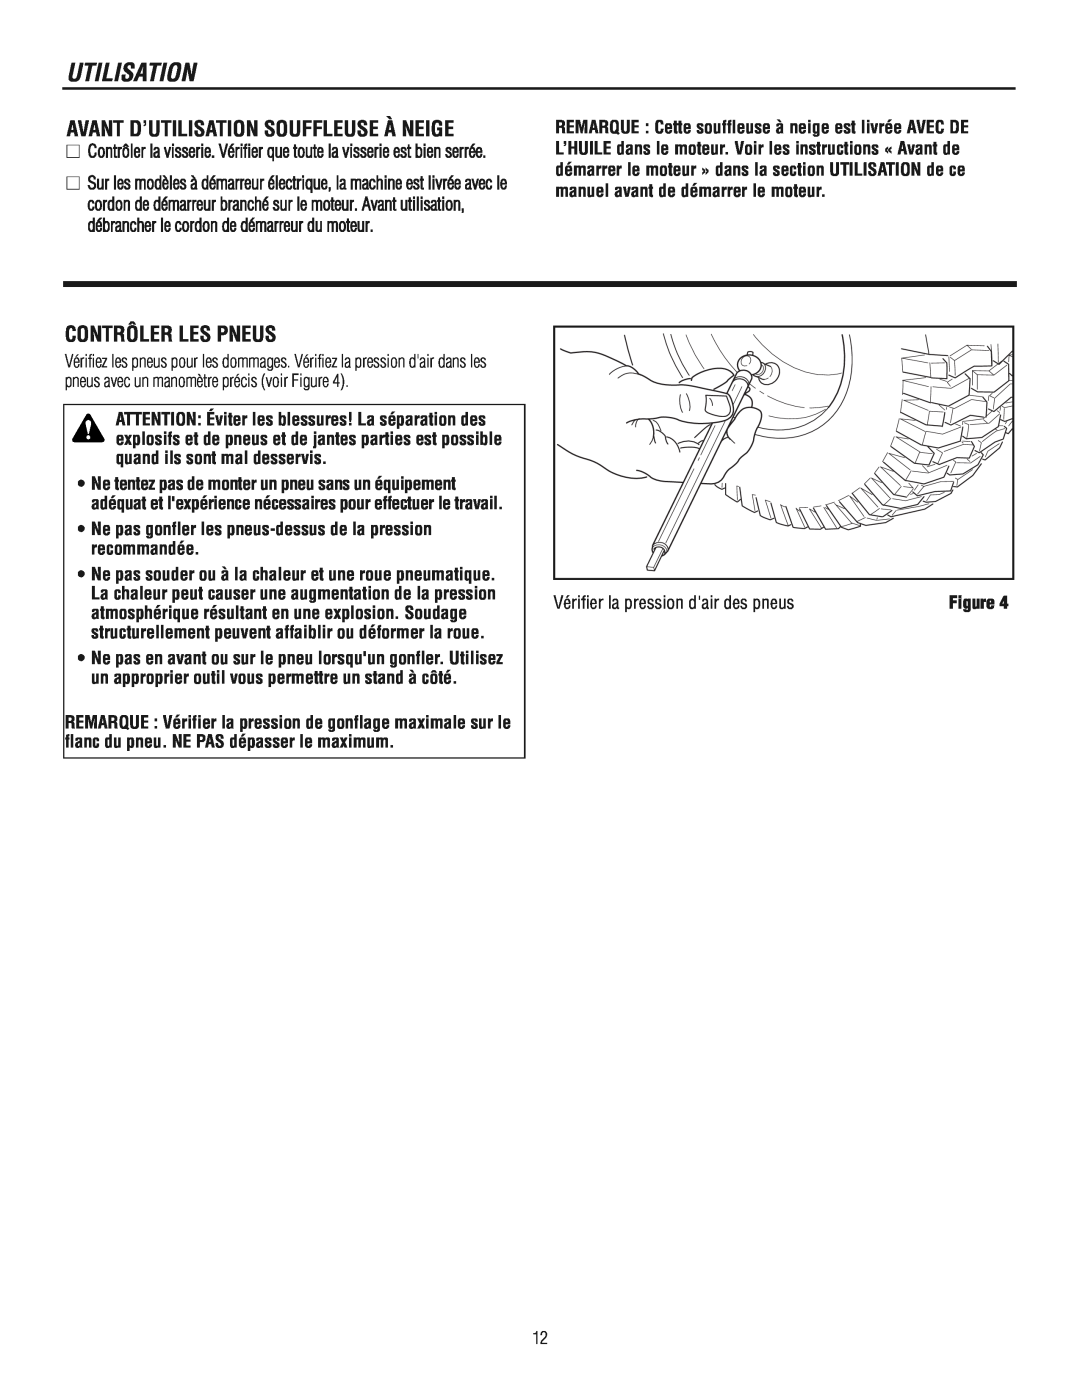 Murray 1695722 manual Avant D’Utilisation Souffleuse À Neige, Contrôler Les Pneus, Vérifier la pression dair des pneus 